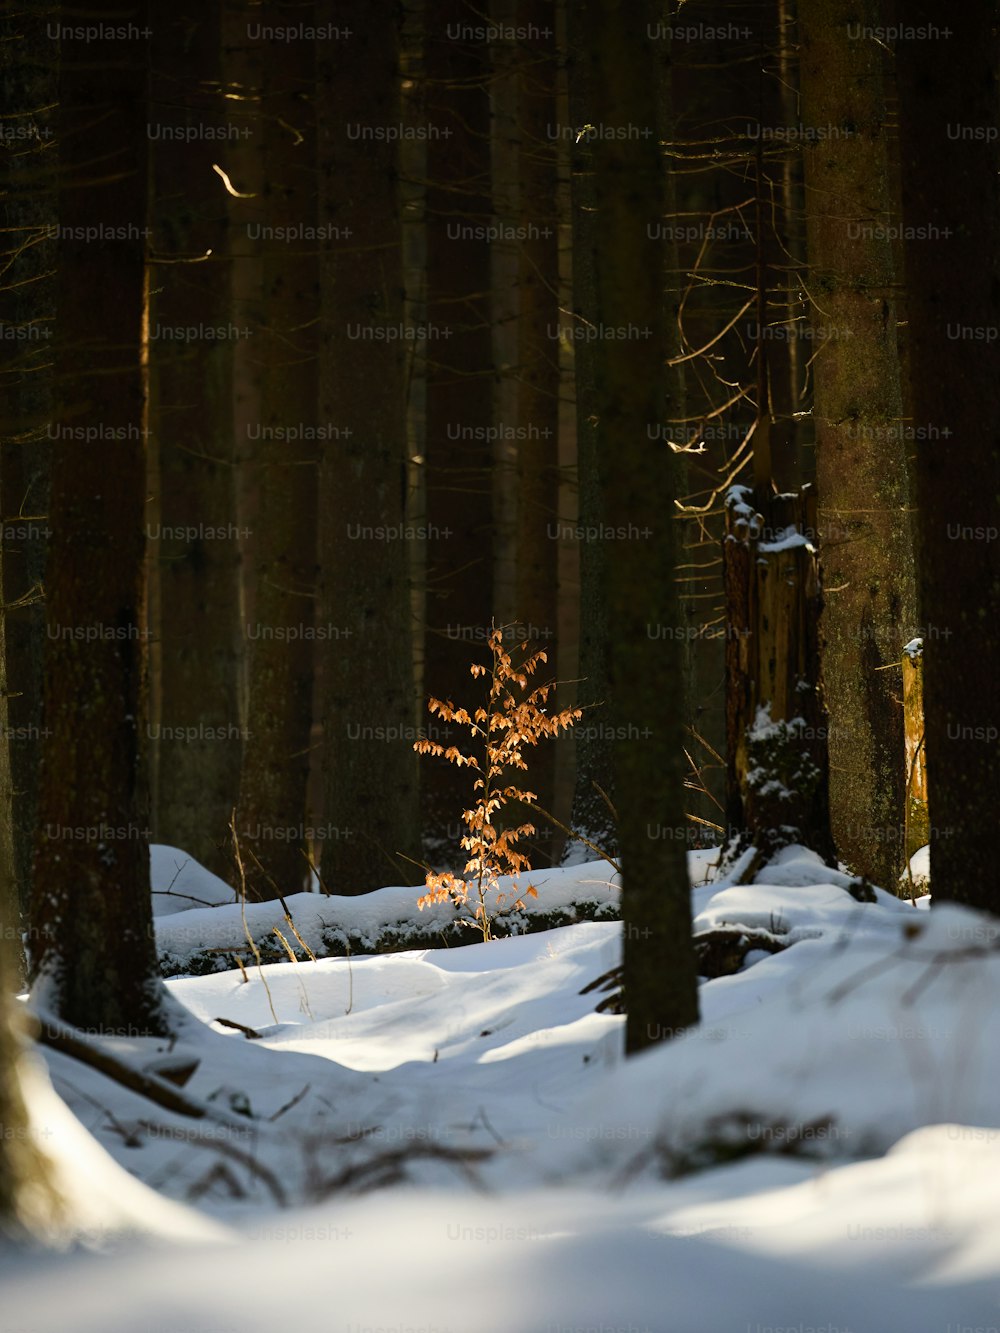 Un pequeño árbol en medio de un bosque nevado